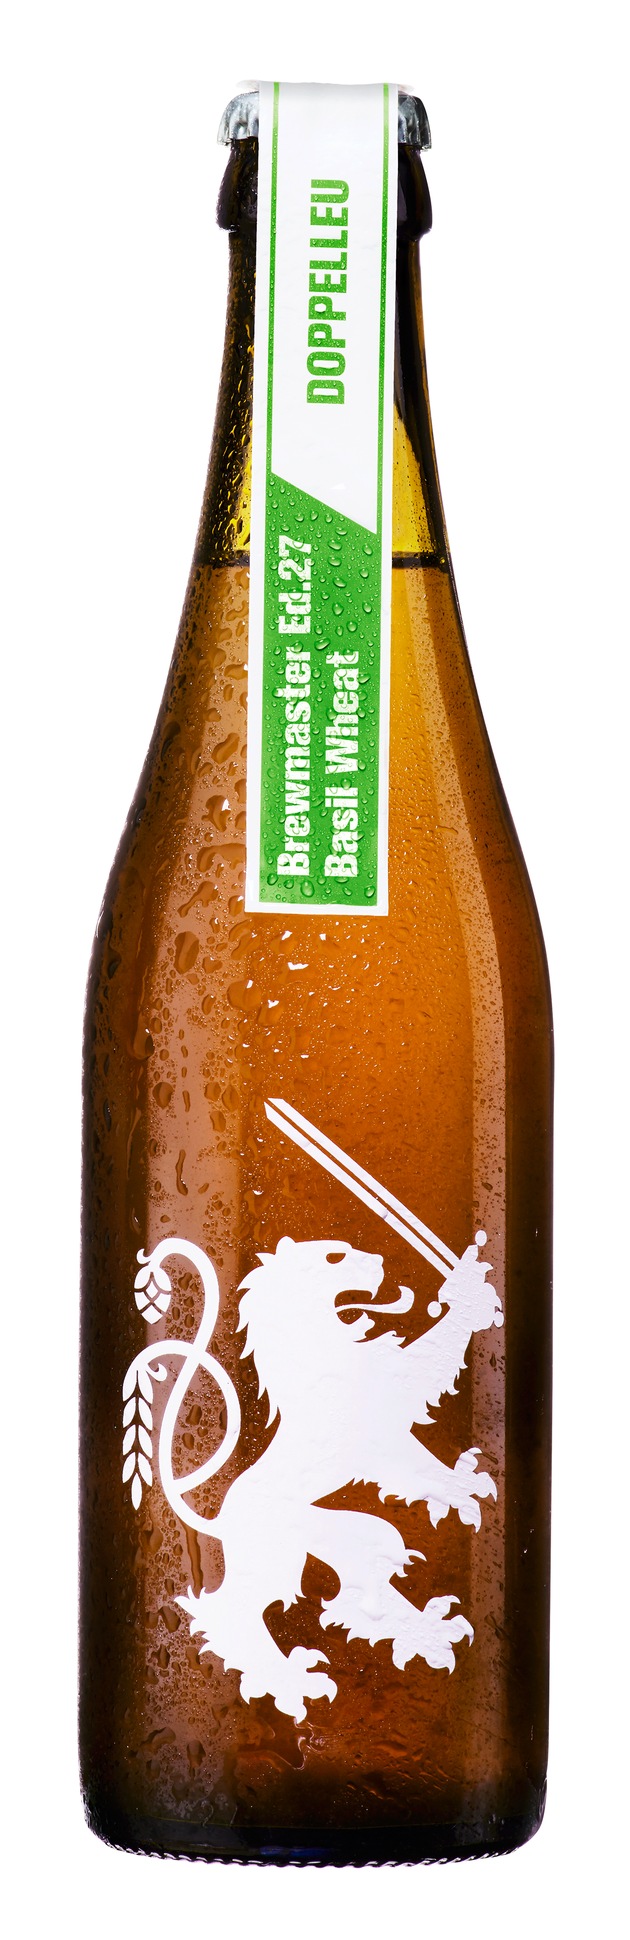 Frühlingsfrische in der Flasche: Doppelleu Brewmaster Limited Ed. 27 Basil Wheat mit frisch gepflücktem Basilikum.